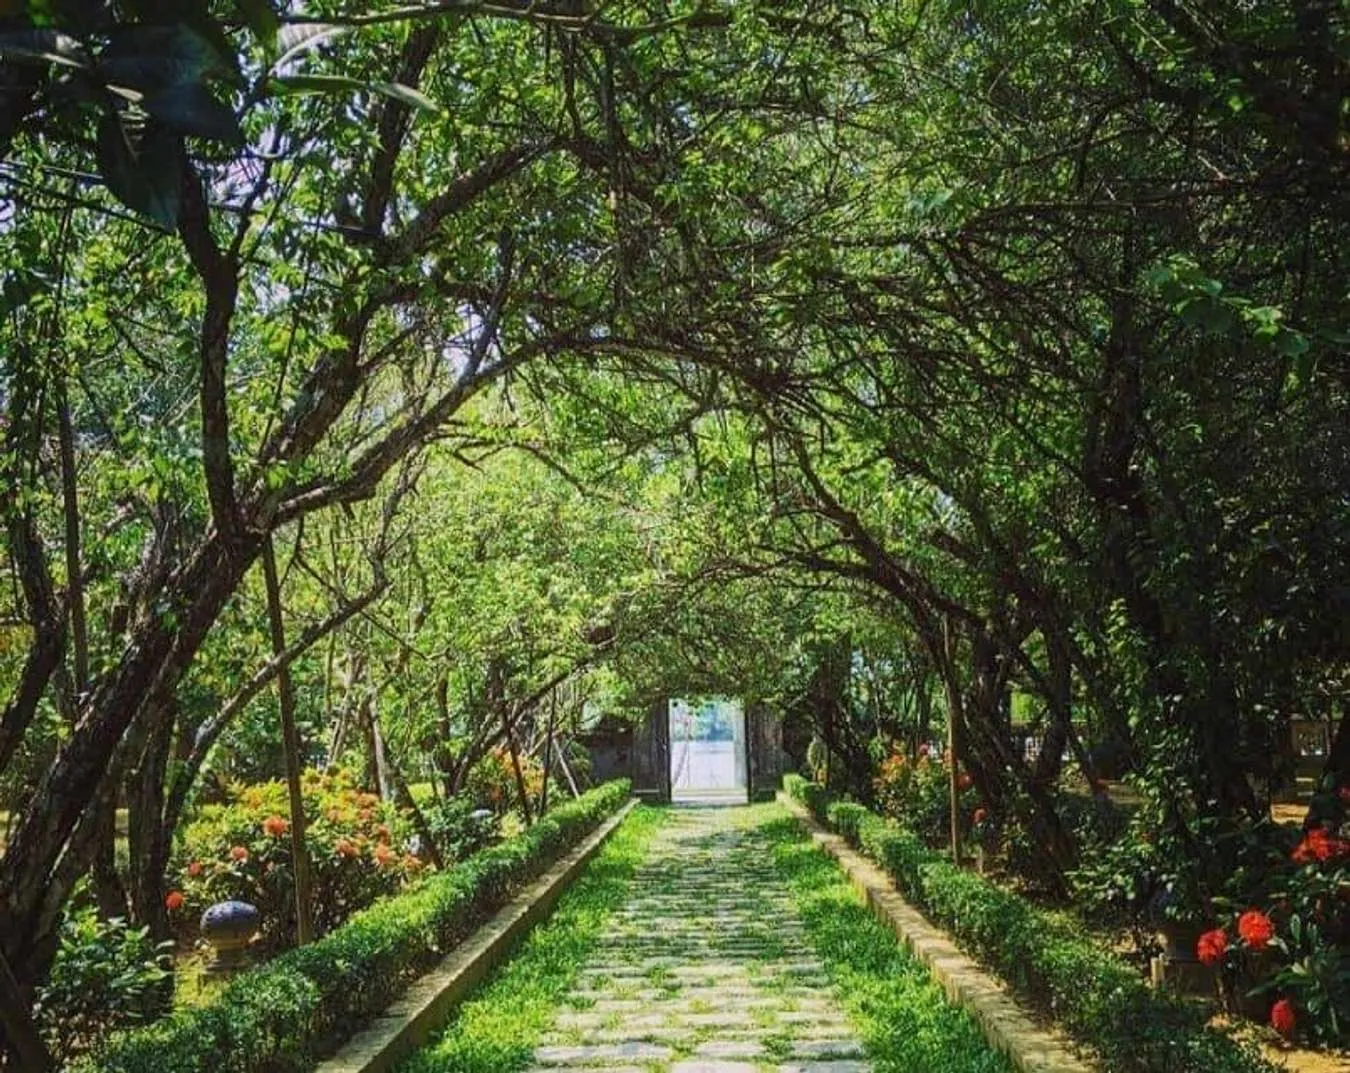 Ghé thăm nhà vườn An Hiên - nhà vườn danh tiếng ở Huế